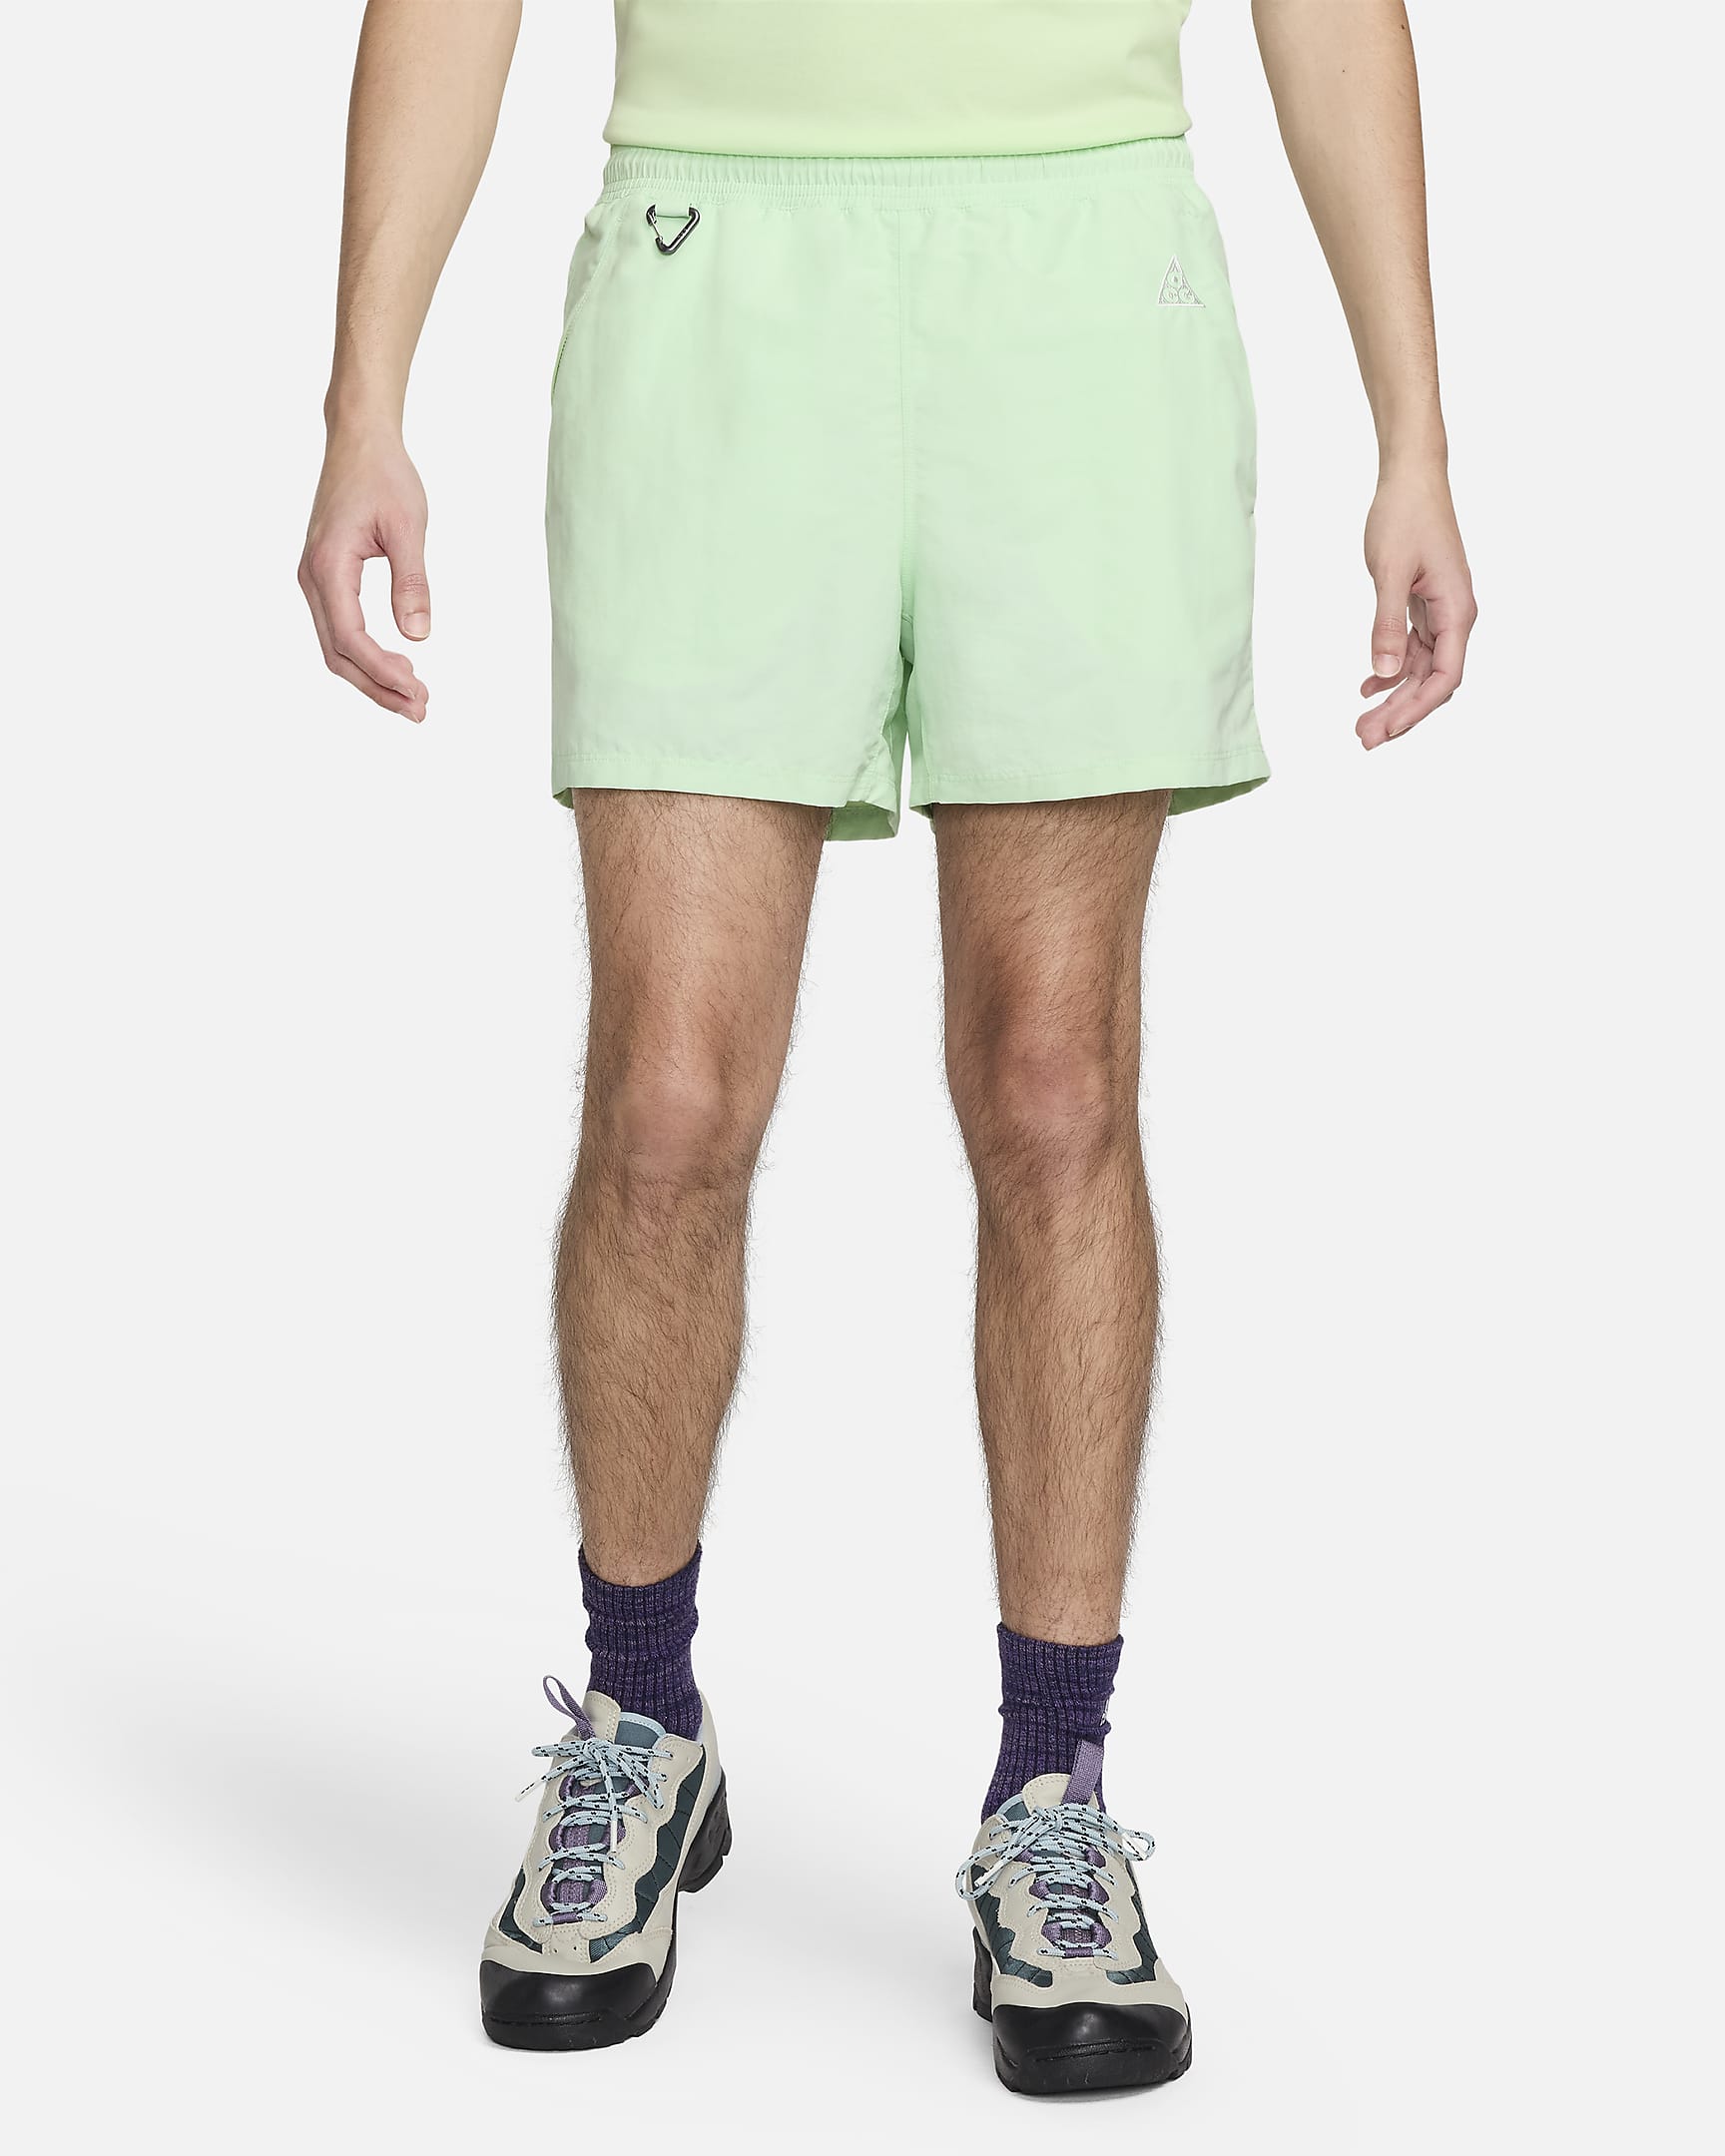 Nike ACG "Reservoir Goat" Men's Shorts - Vapor Green/Summit White